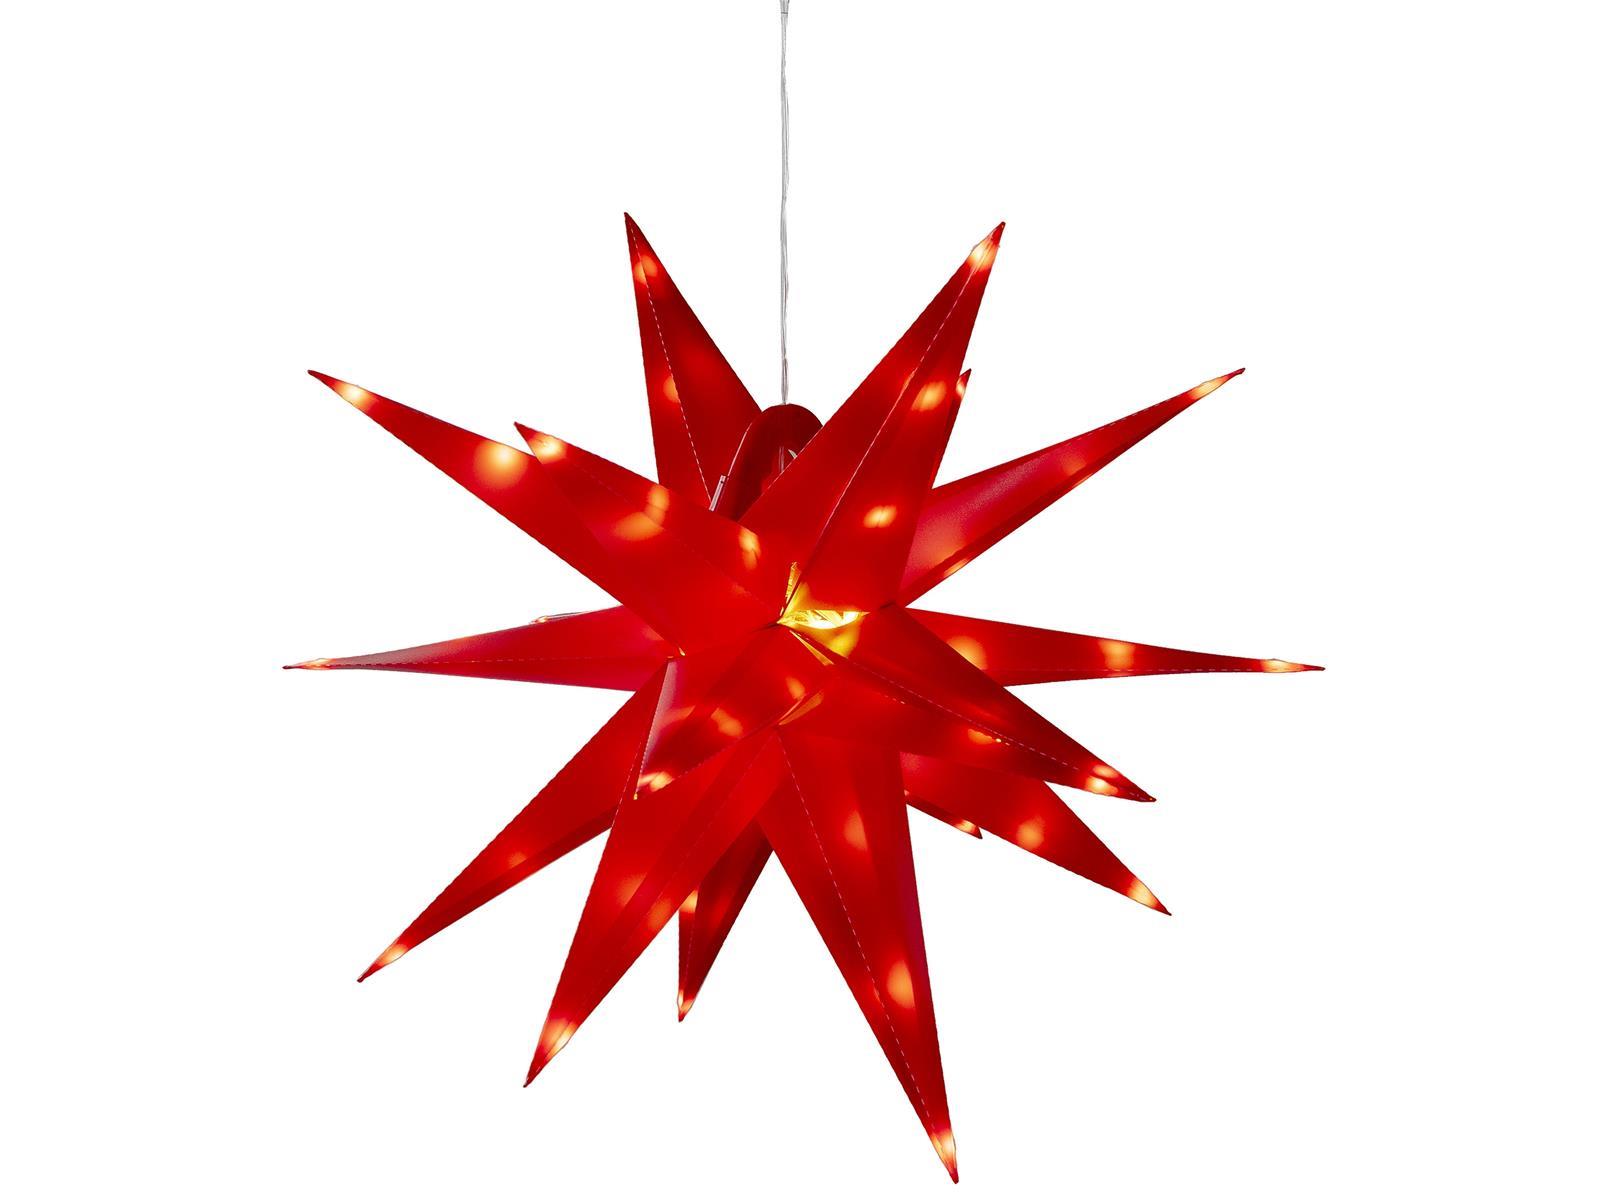 Großer 3D Weihnachtsstern rot, 56cm72 warmweiße LEDs, Batteriebetrieb